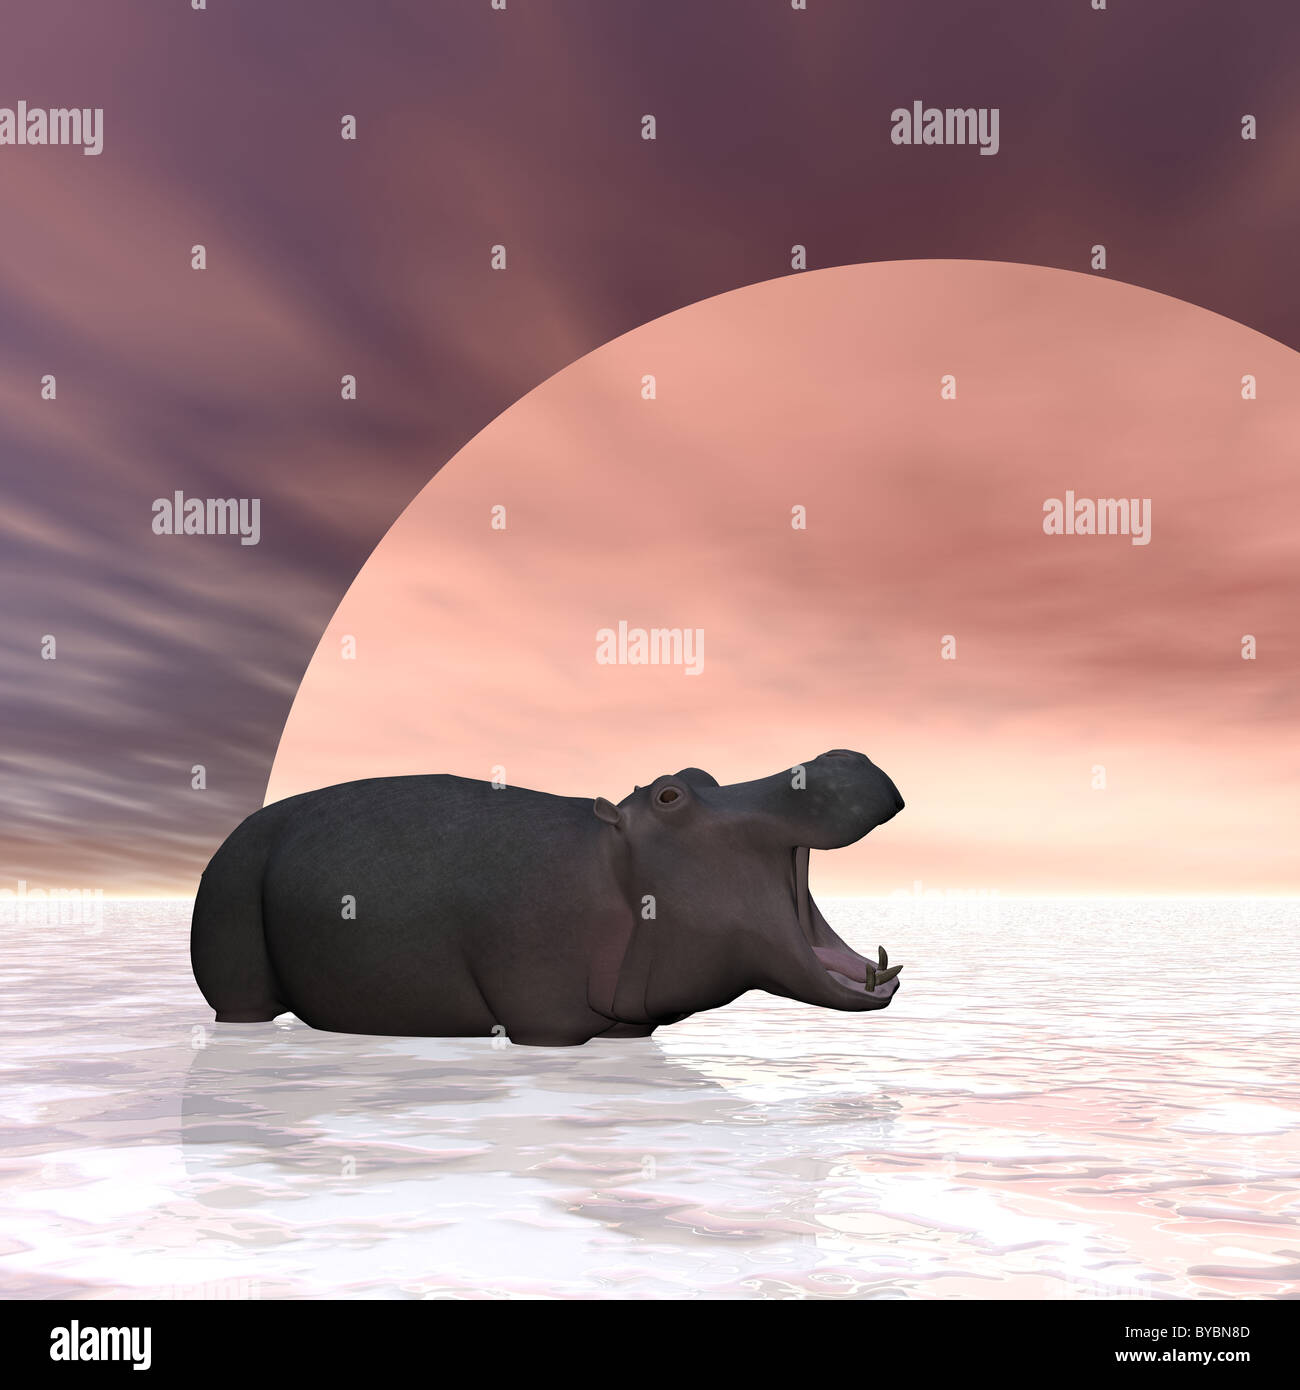 Illustration d'un hippopotame debout dans un lac gelé Banque D'Images